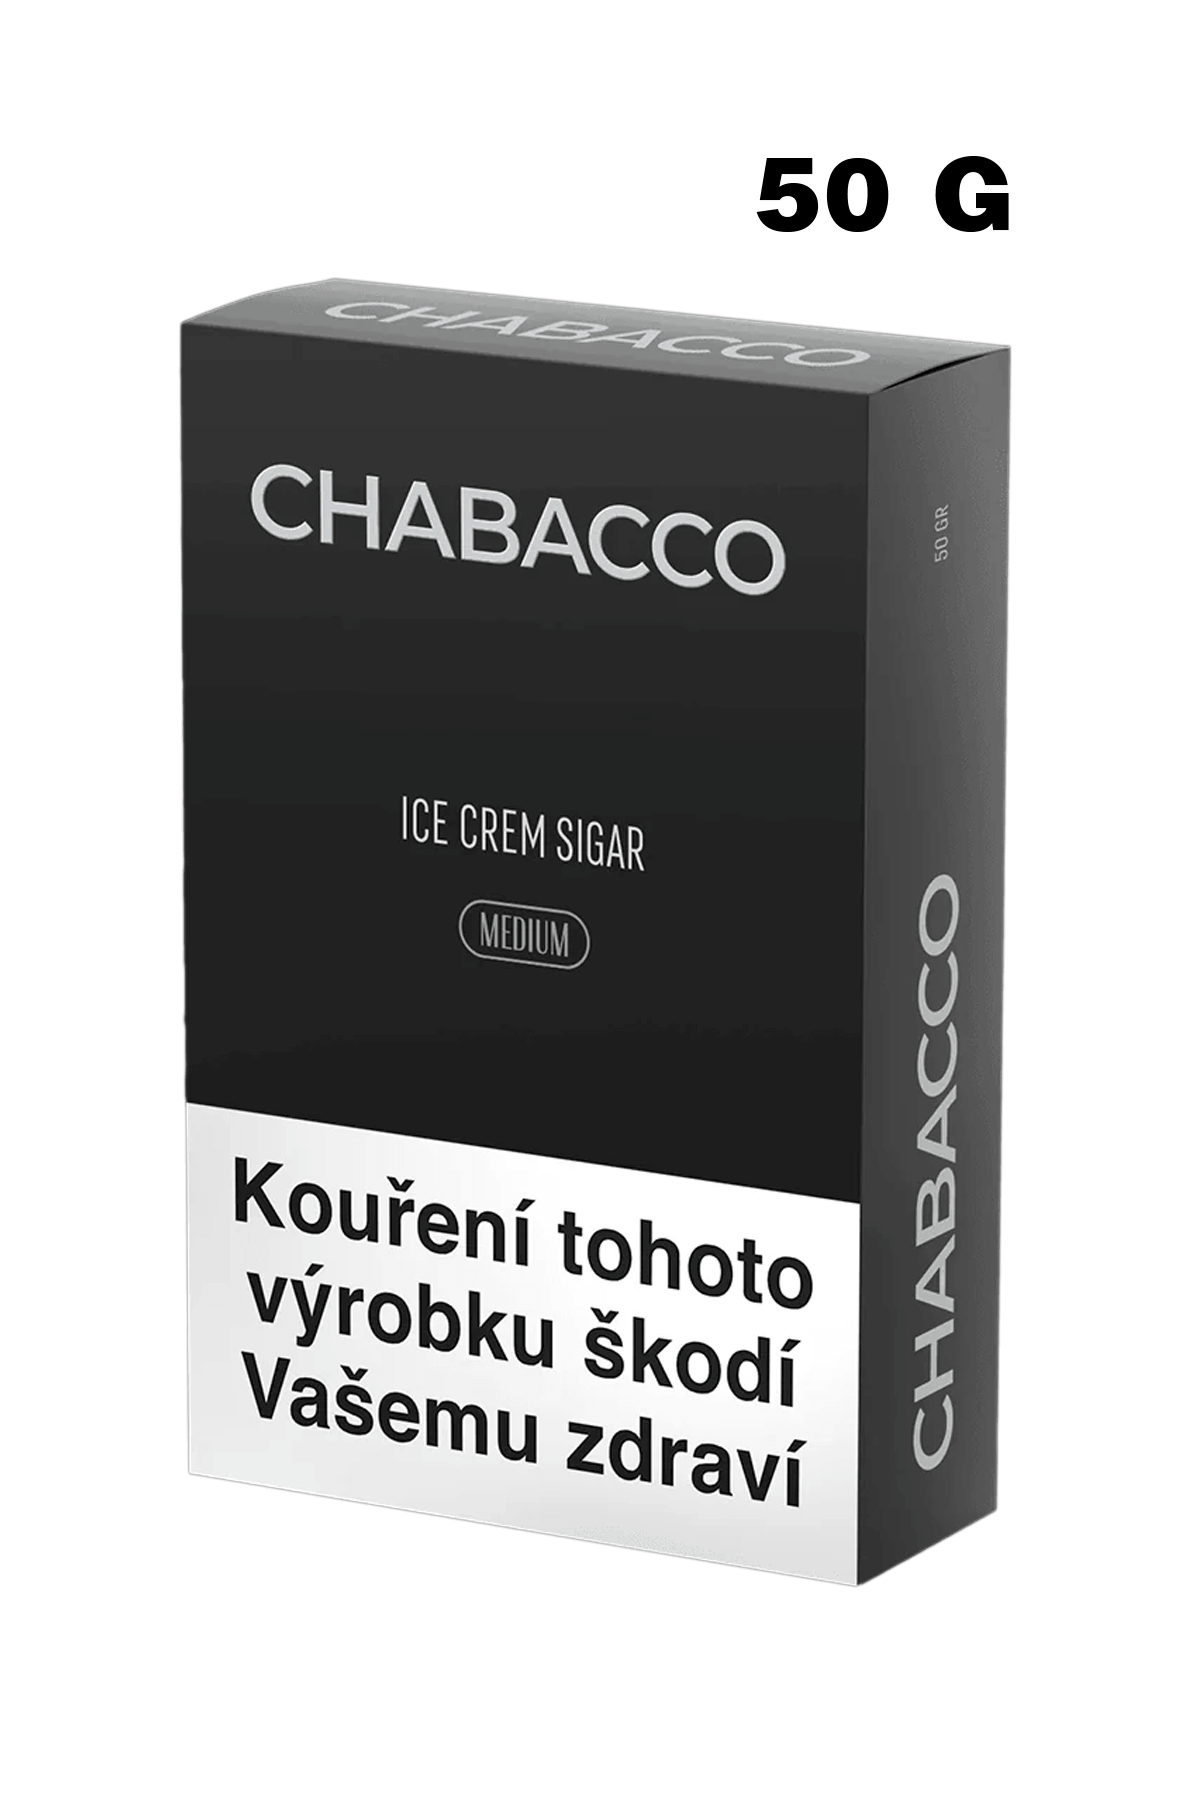 Tobacco - Chabacco Medium 50g - Ice Cream Sugar